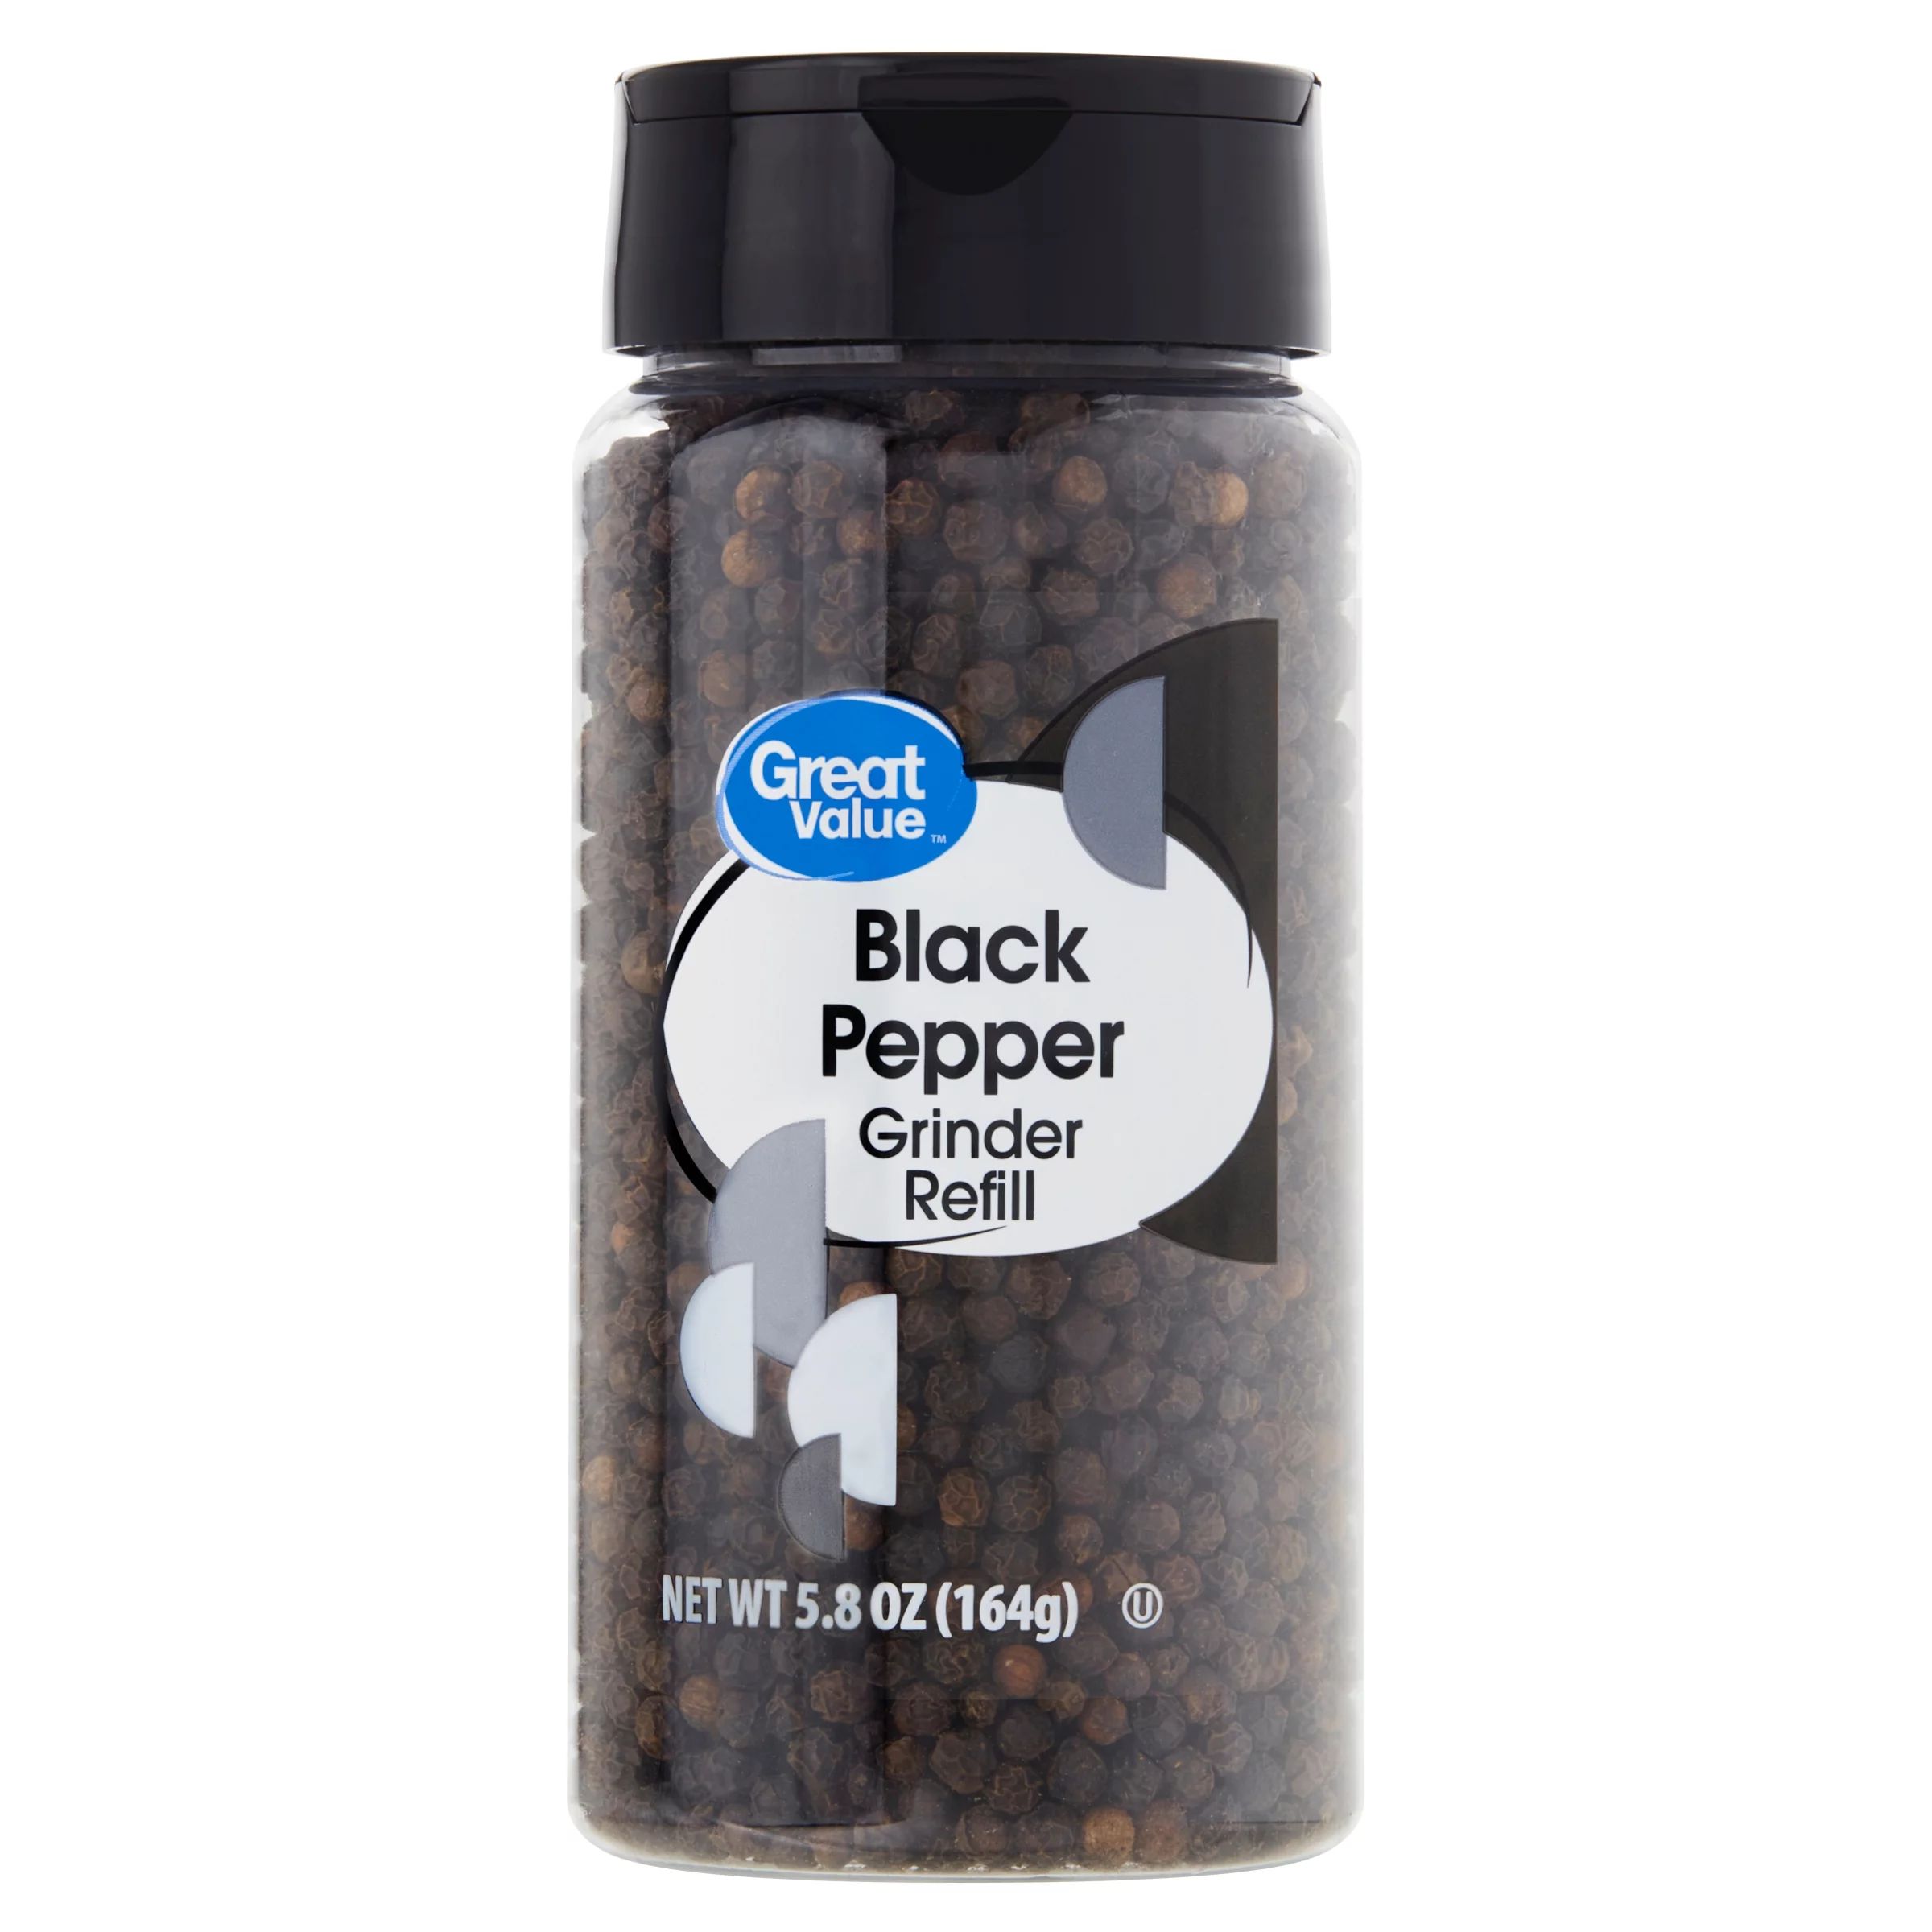 Great Value Grinder Refill Black Pepper, 5.8 oz - Walmart.com | Walmart (US)